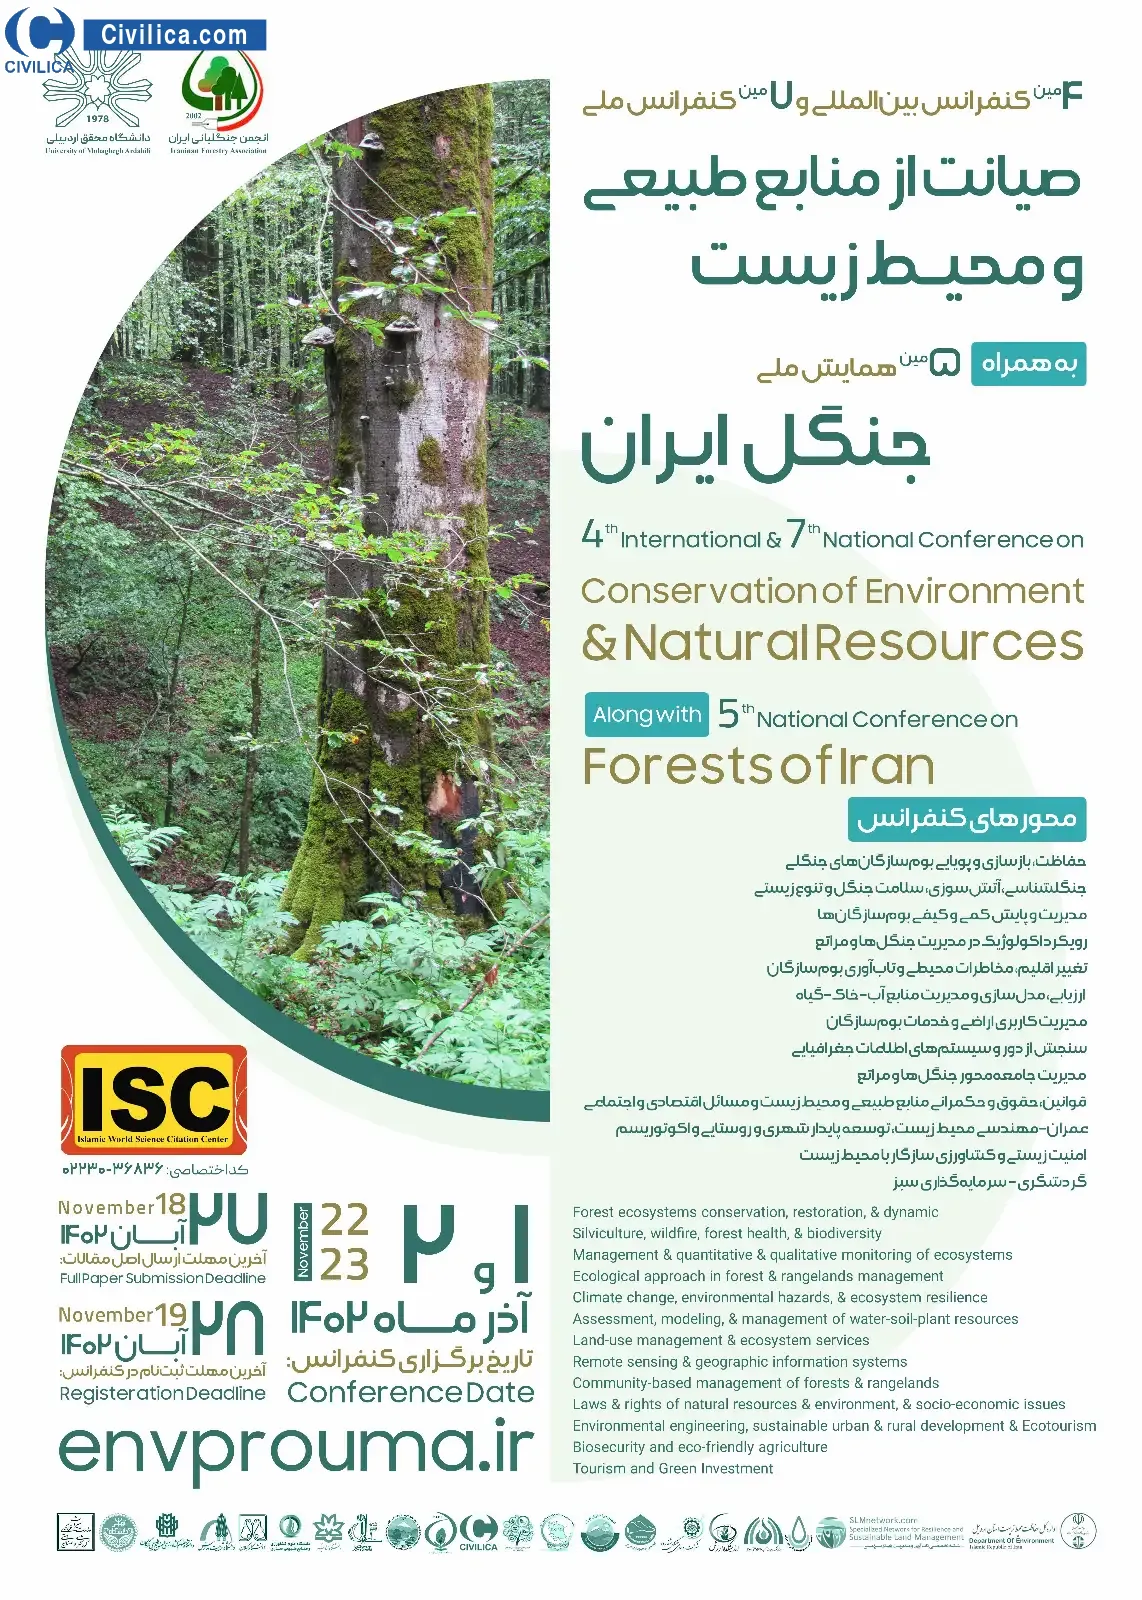 چهارمین کنفرانس بین المللی و هفتمین کنفرانس ملی صیانت از منابع طبیعی و محیط زیست به همراه پنجمین همایش ملی جنگل ایران